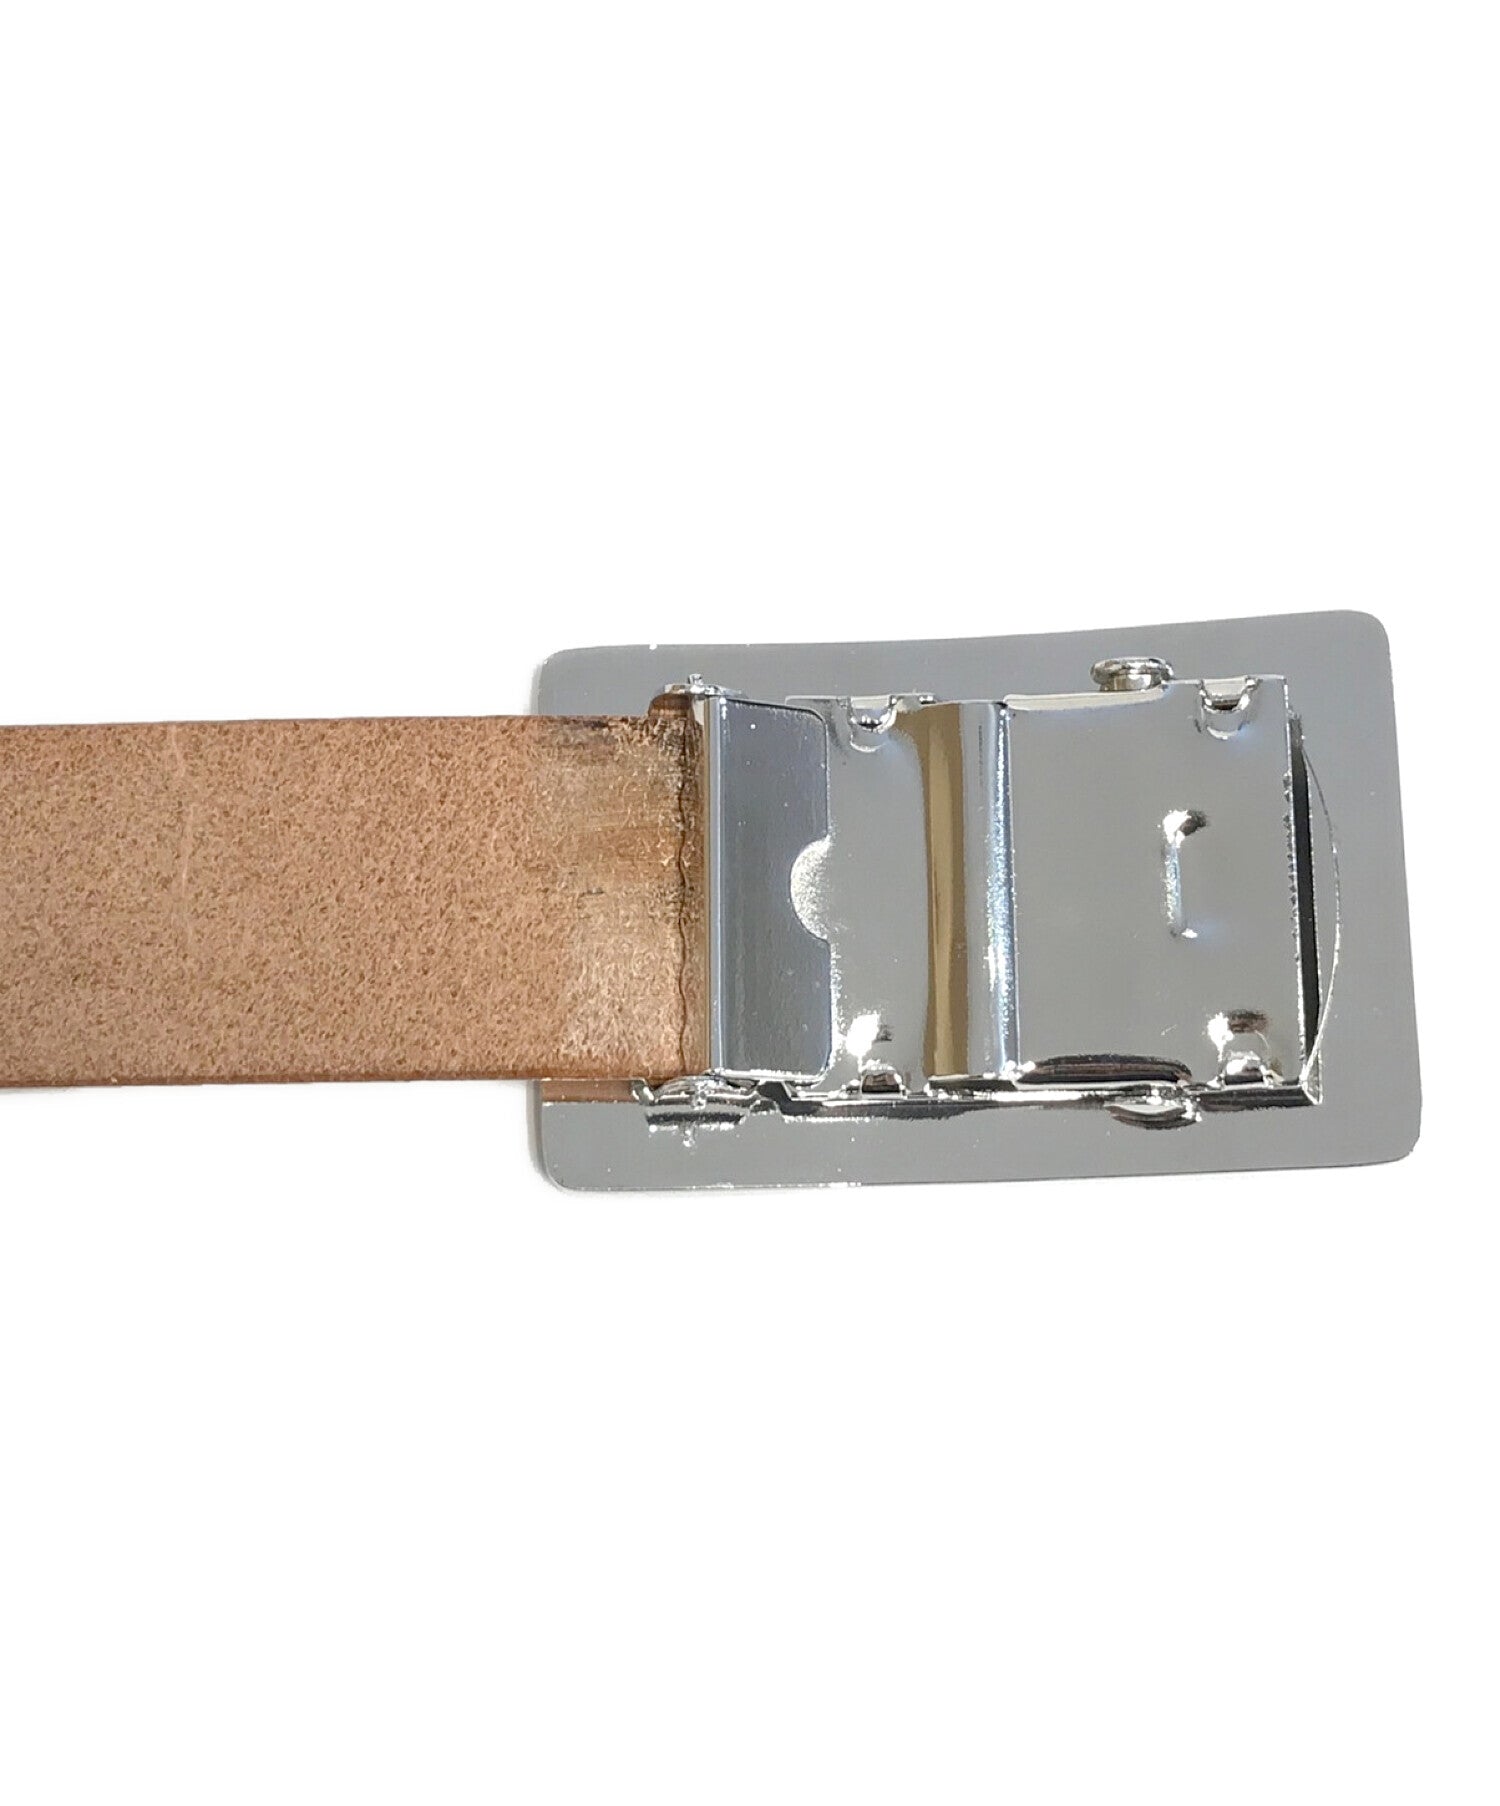 注目のブランド Human made heart leather belt ベルト - 小物